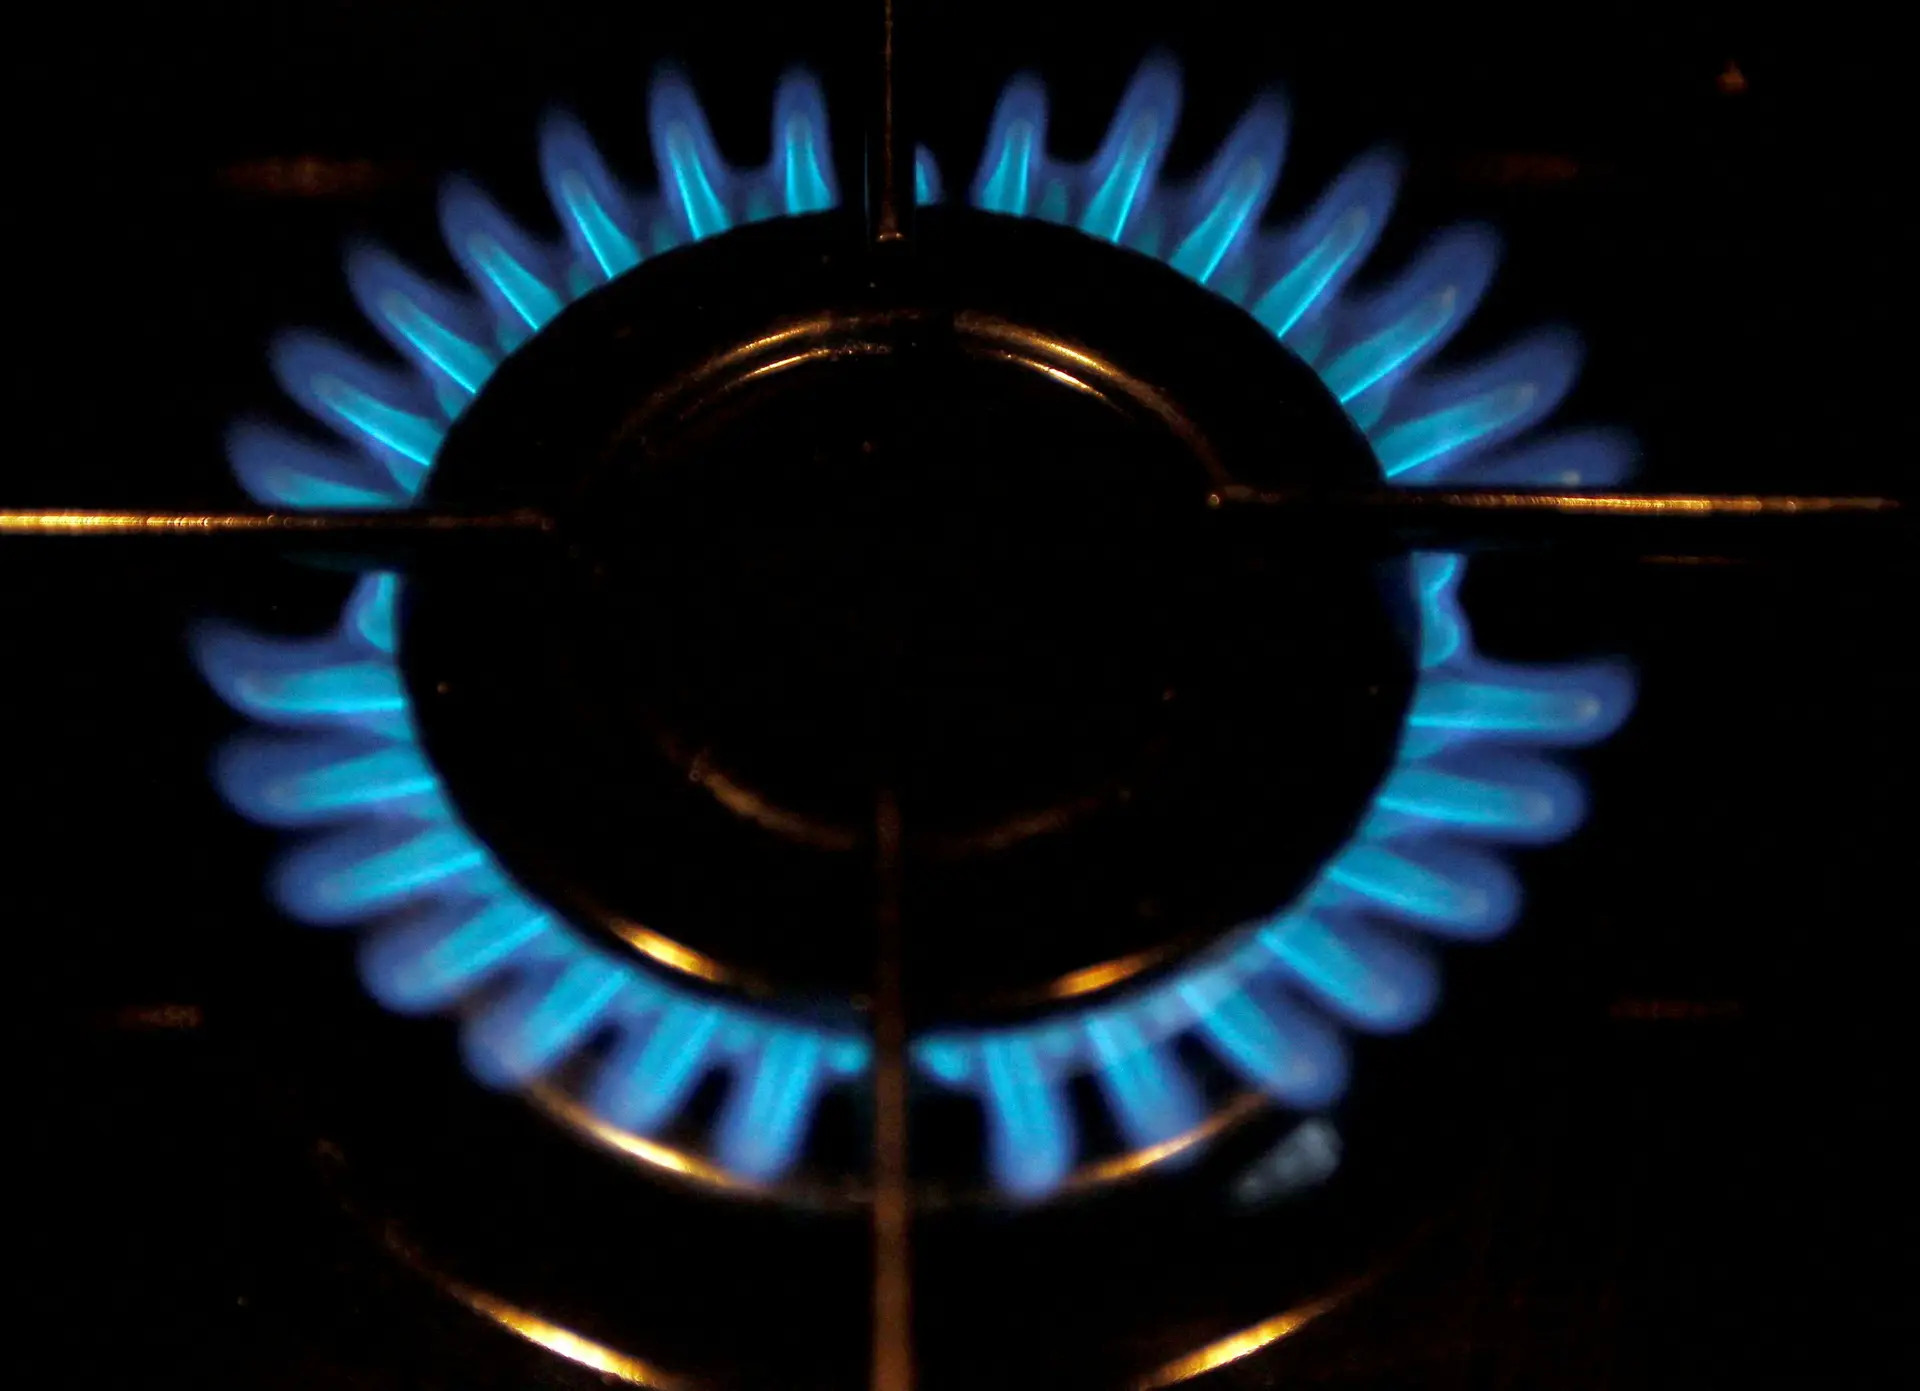 Tarifas reguladas de eletricidade e gás: 20 perguntas e respostas sobre o que fazer se quiser aderir